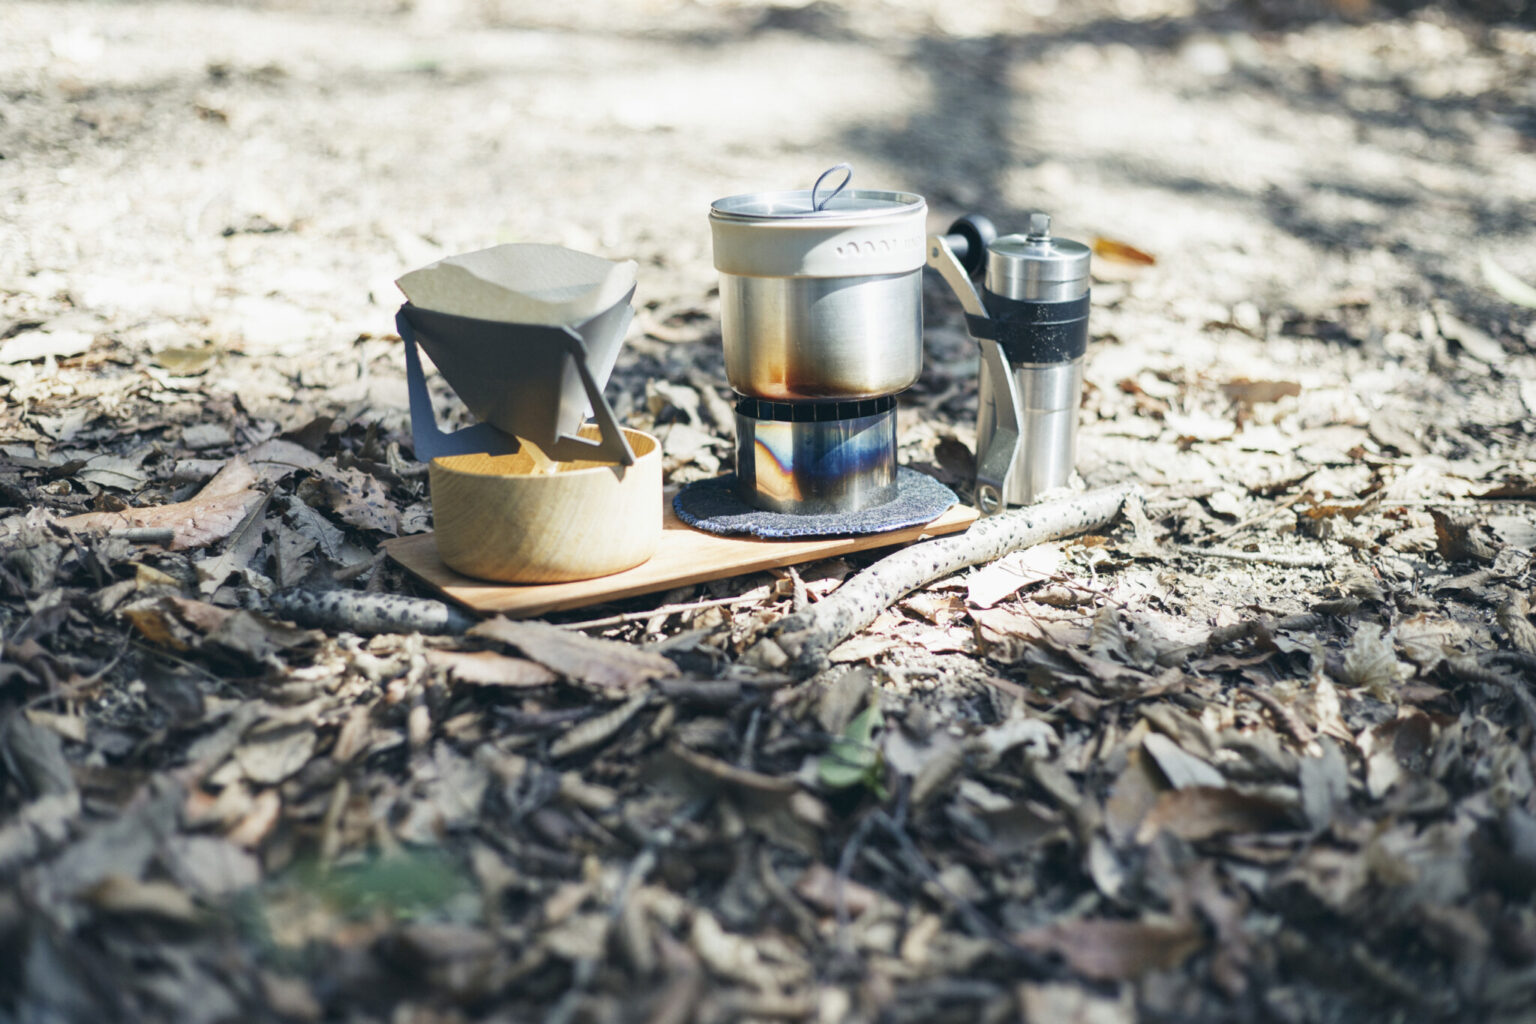 コーヒーに欠かせない道具。ミルとトレイを除けばすべて入れ子で収まる。サーバーには〈山のうつわ〉の木製食器を利用。